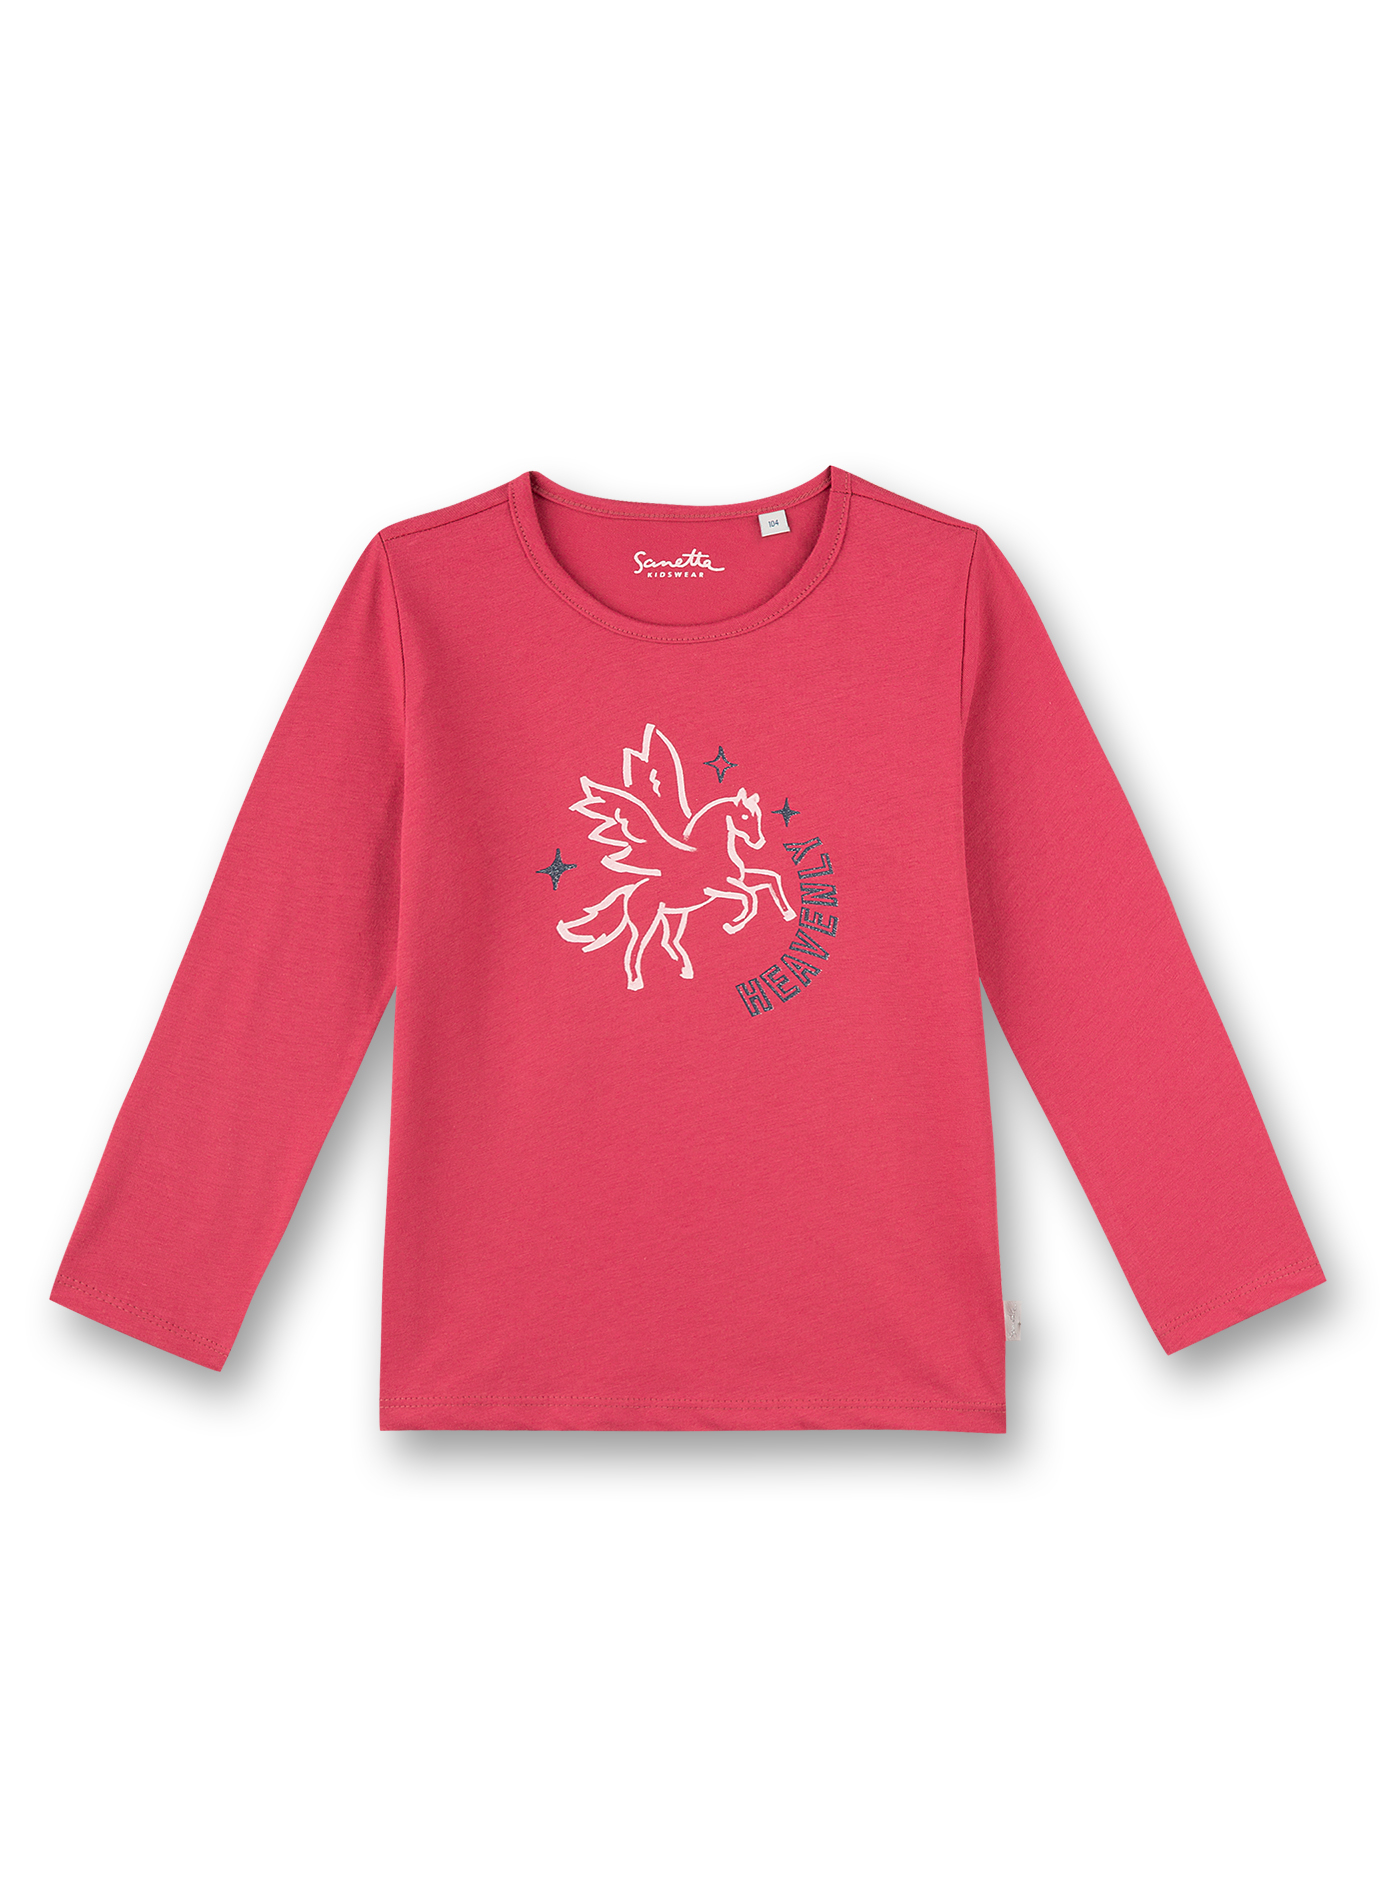 Mädchen-Shirt langarm Pink Flying Pegasus